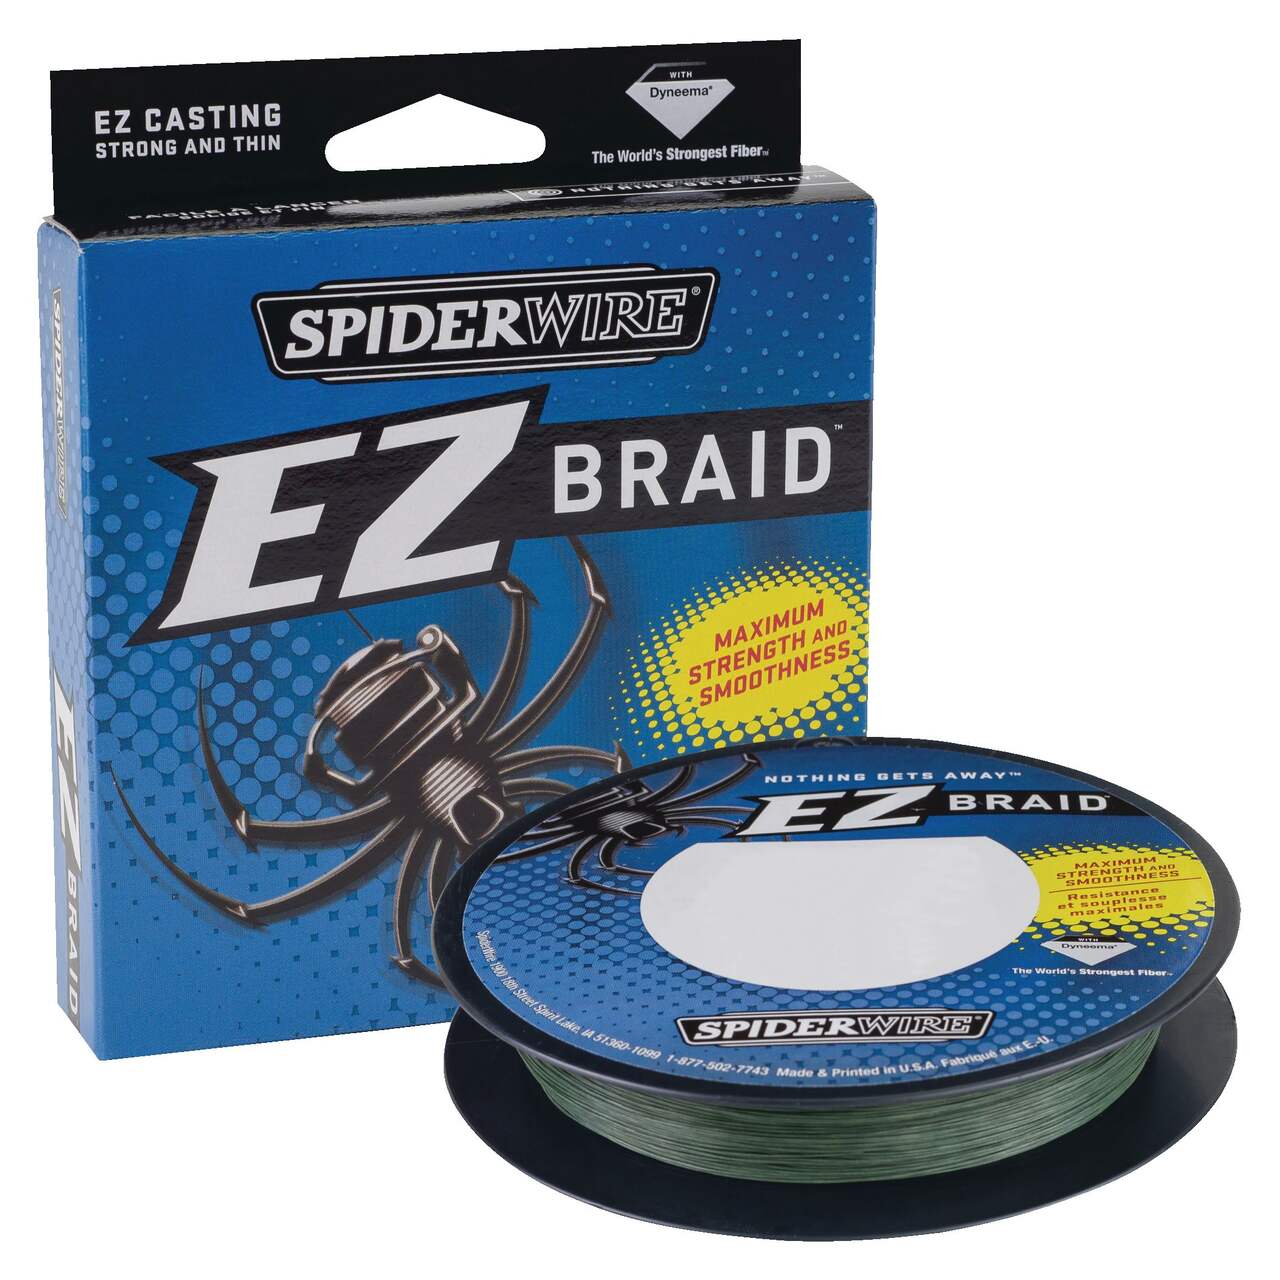 Spiderwire® EZ Braid Fishing Line, Green